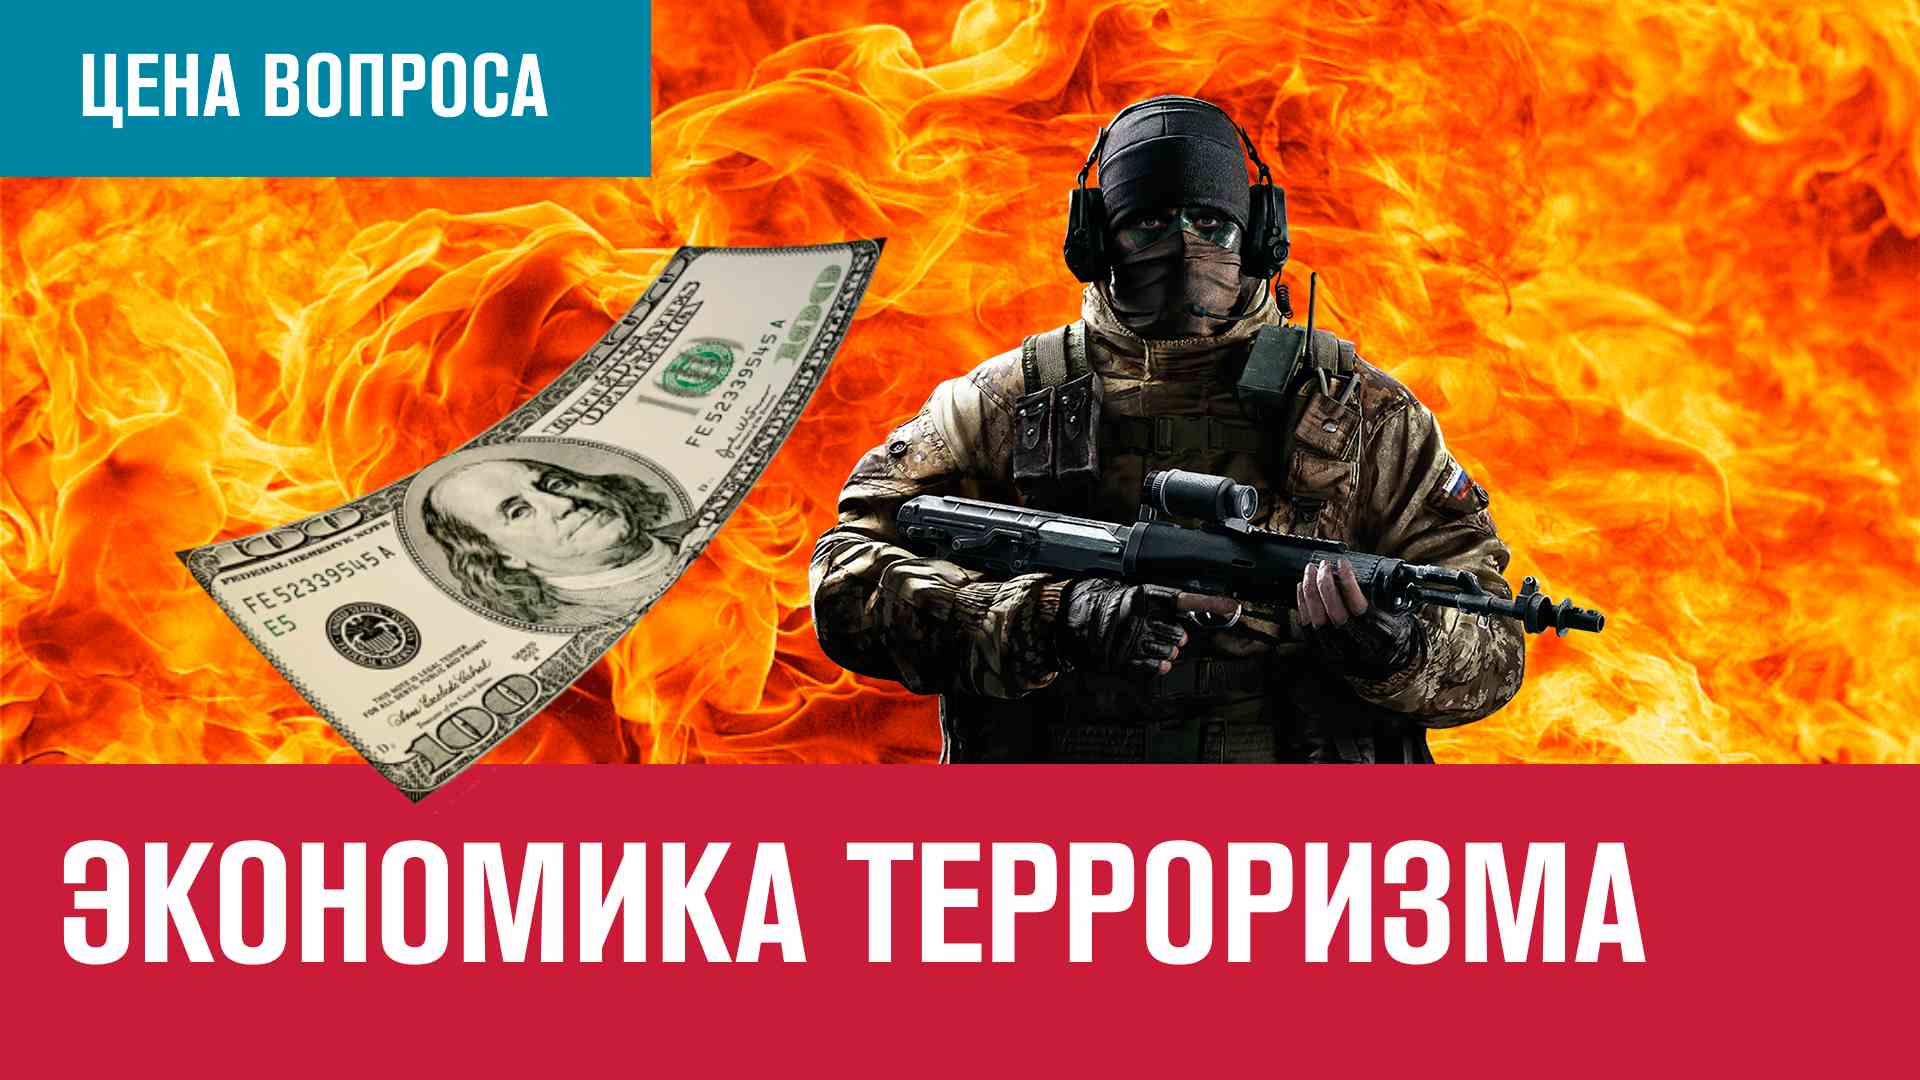 Экономическая основа международного терроризма - Цена Вопроса/Москва FM